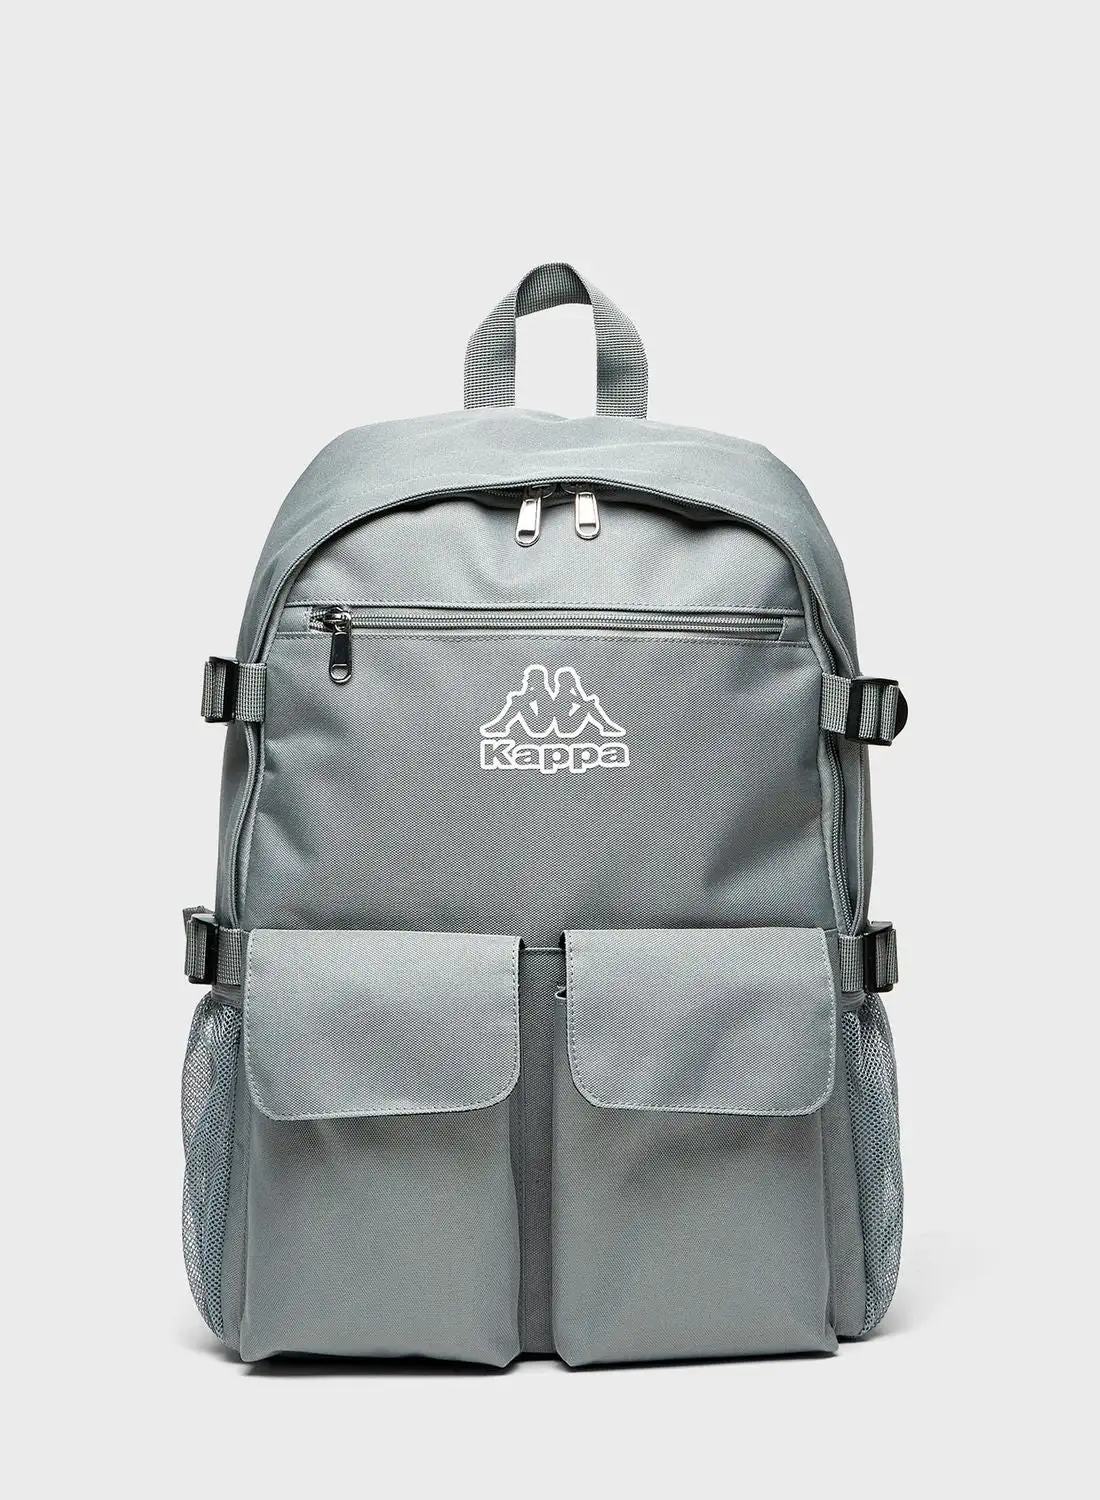 Kappa Logo Backpack